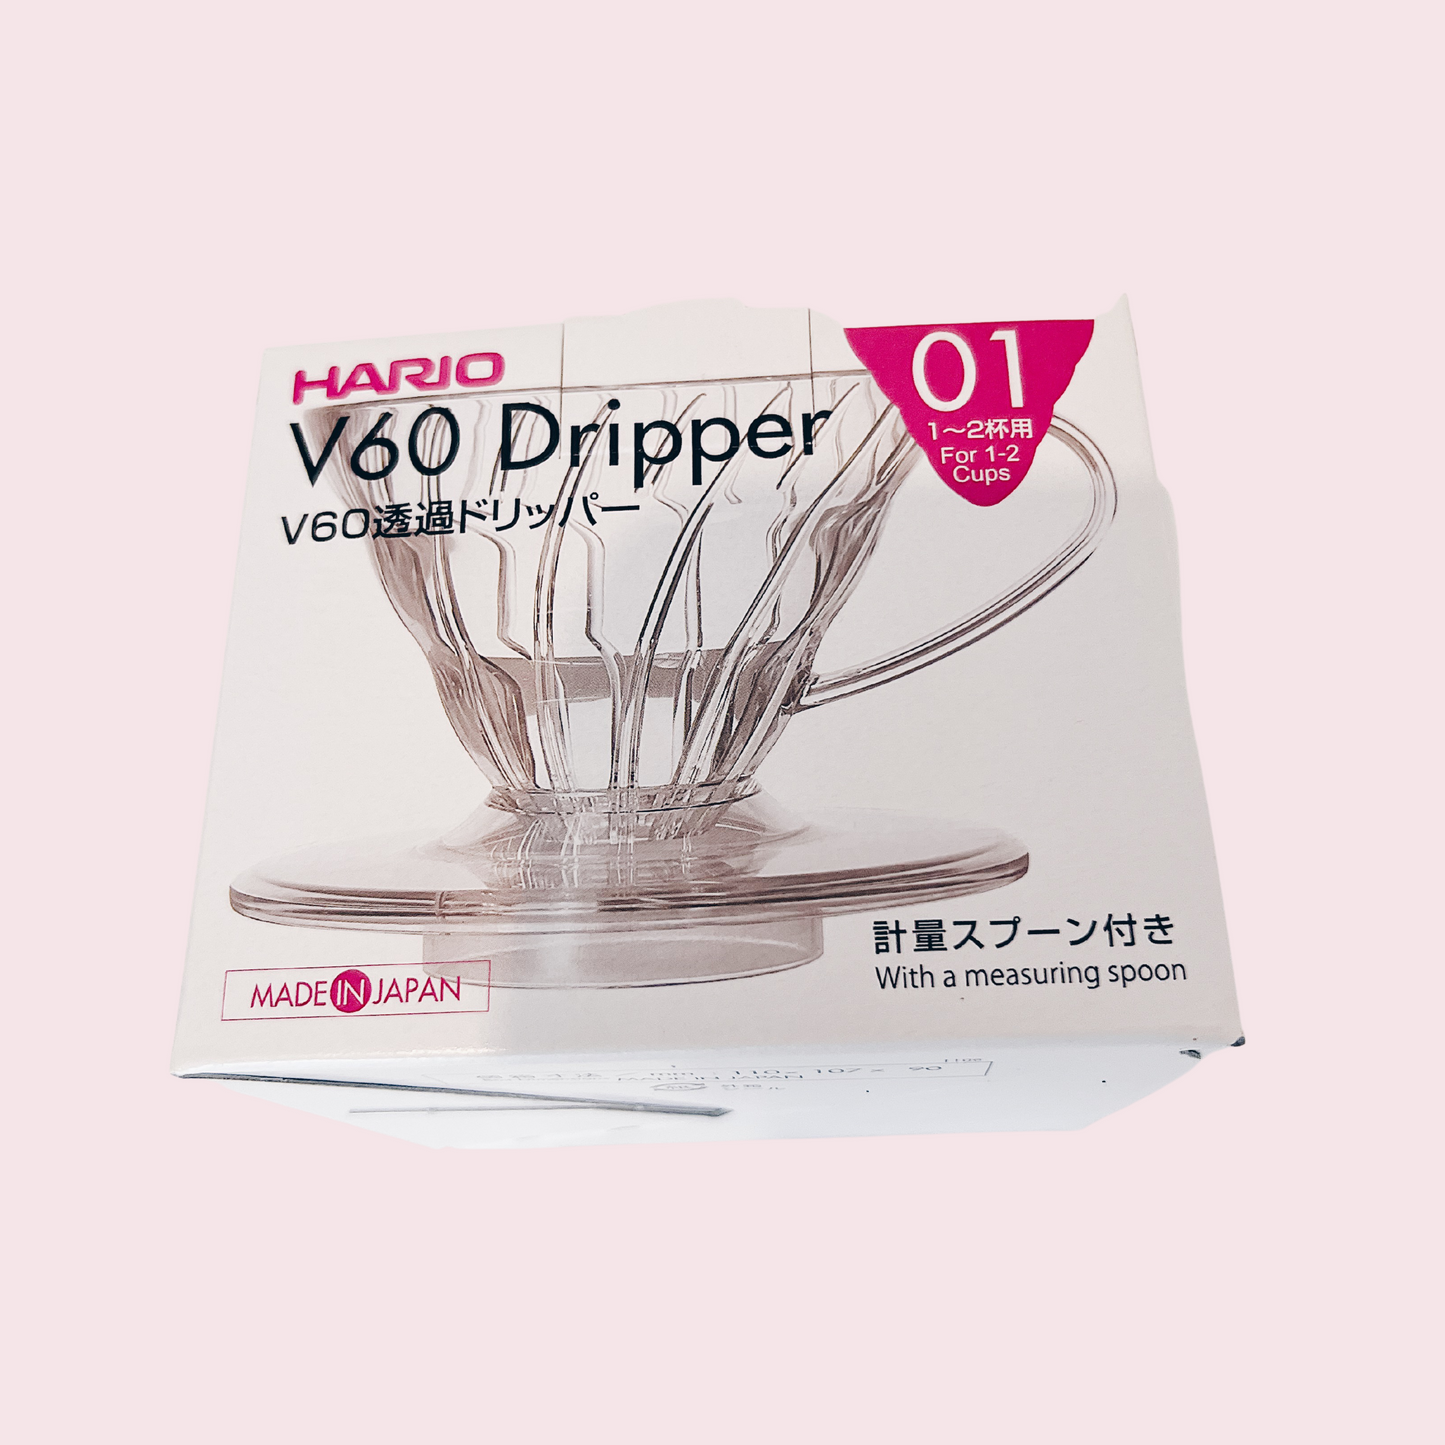 Hario V60 Dripper